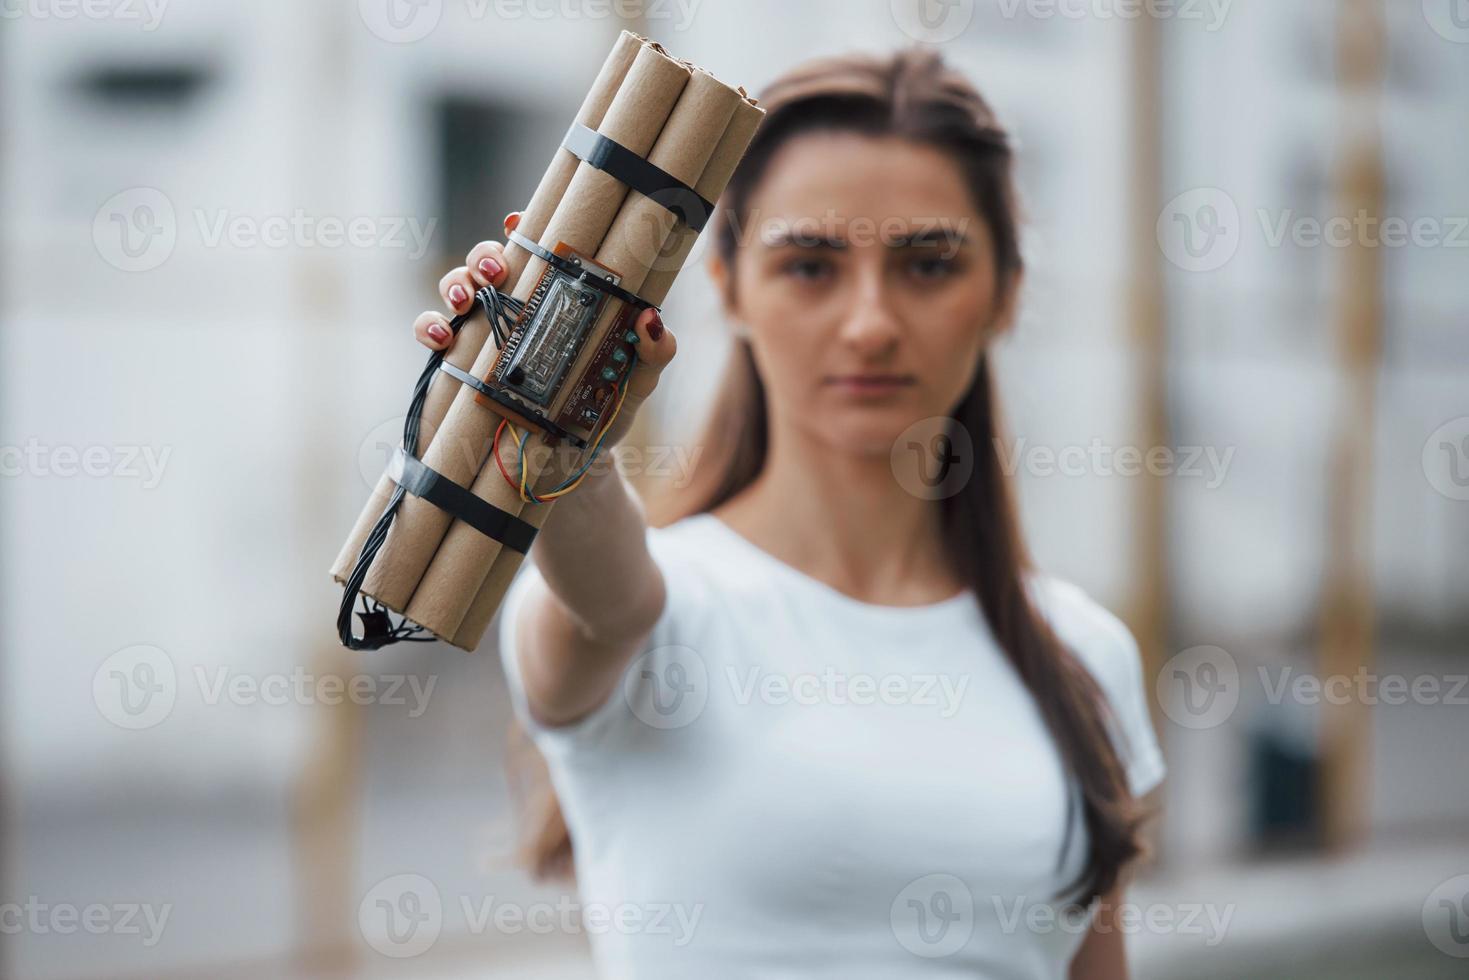 elementos digitales. mostrando bomba de tiempo. mujer joven sosteniendo un arma explosiva peligrosa en la mano foto